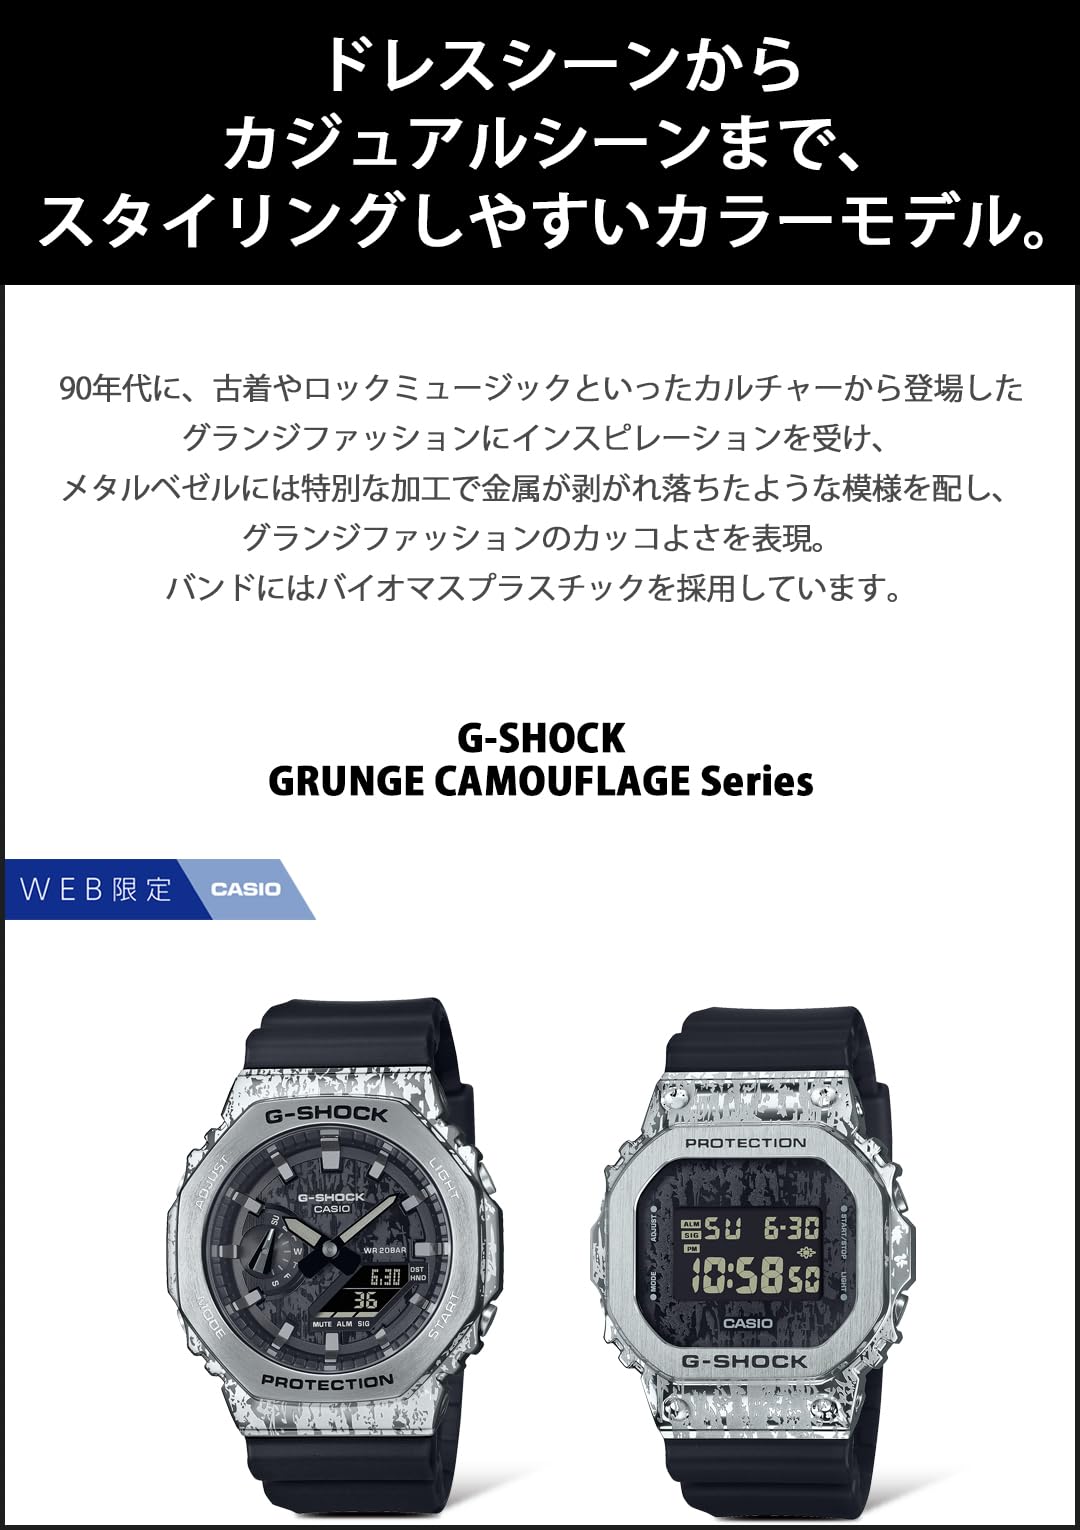 ジーショック [カシオ] 腕時計 【国内正規品】web限定 メタルカバード Grunge Camouflage Series GM-5600GC-1JF メンズ ブラック - BanzaiHobby